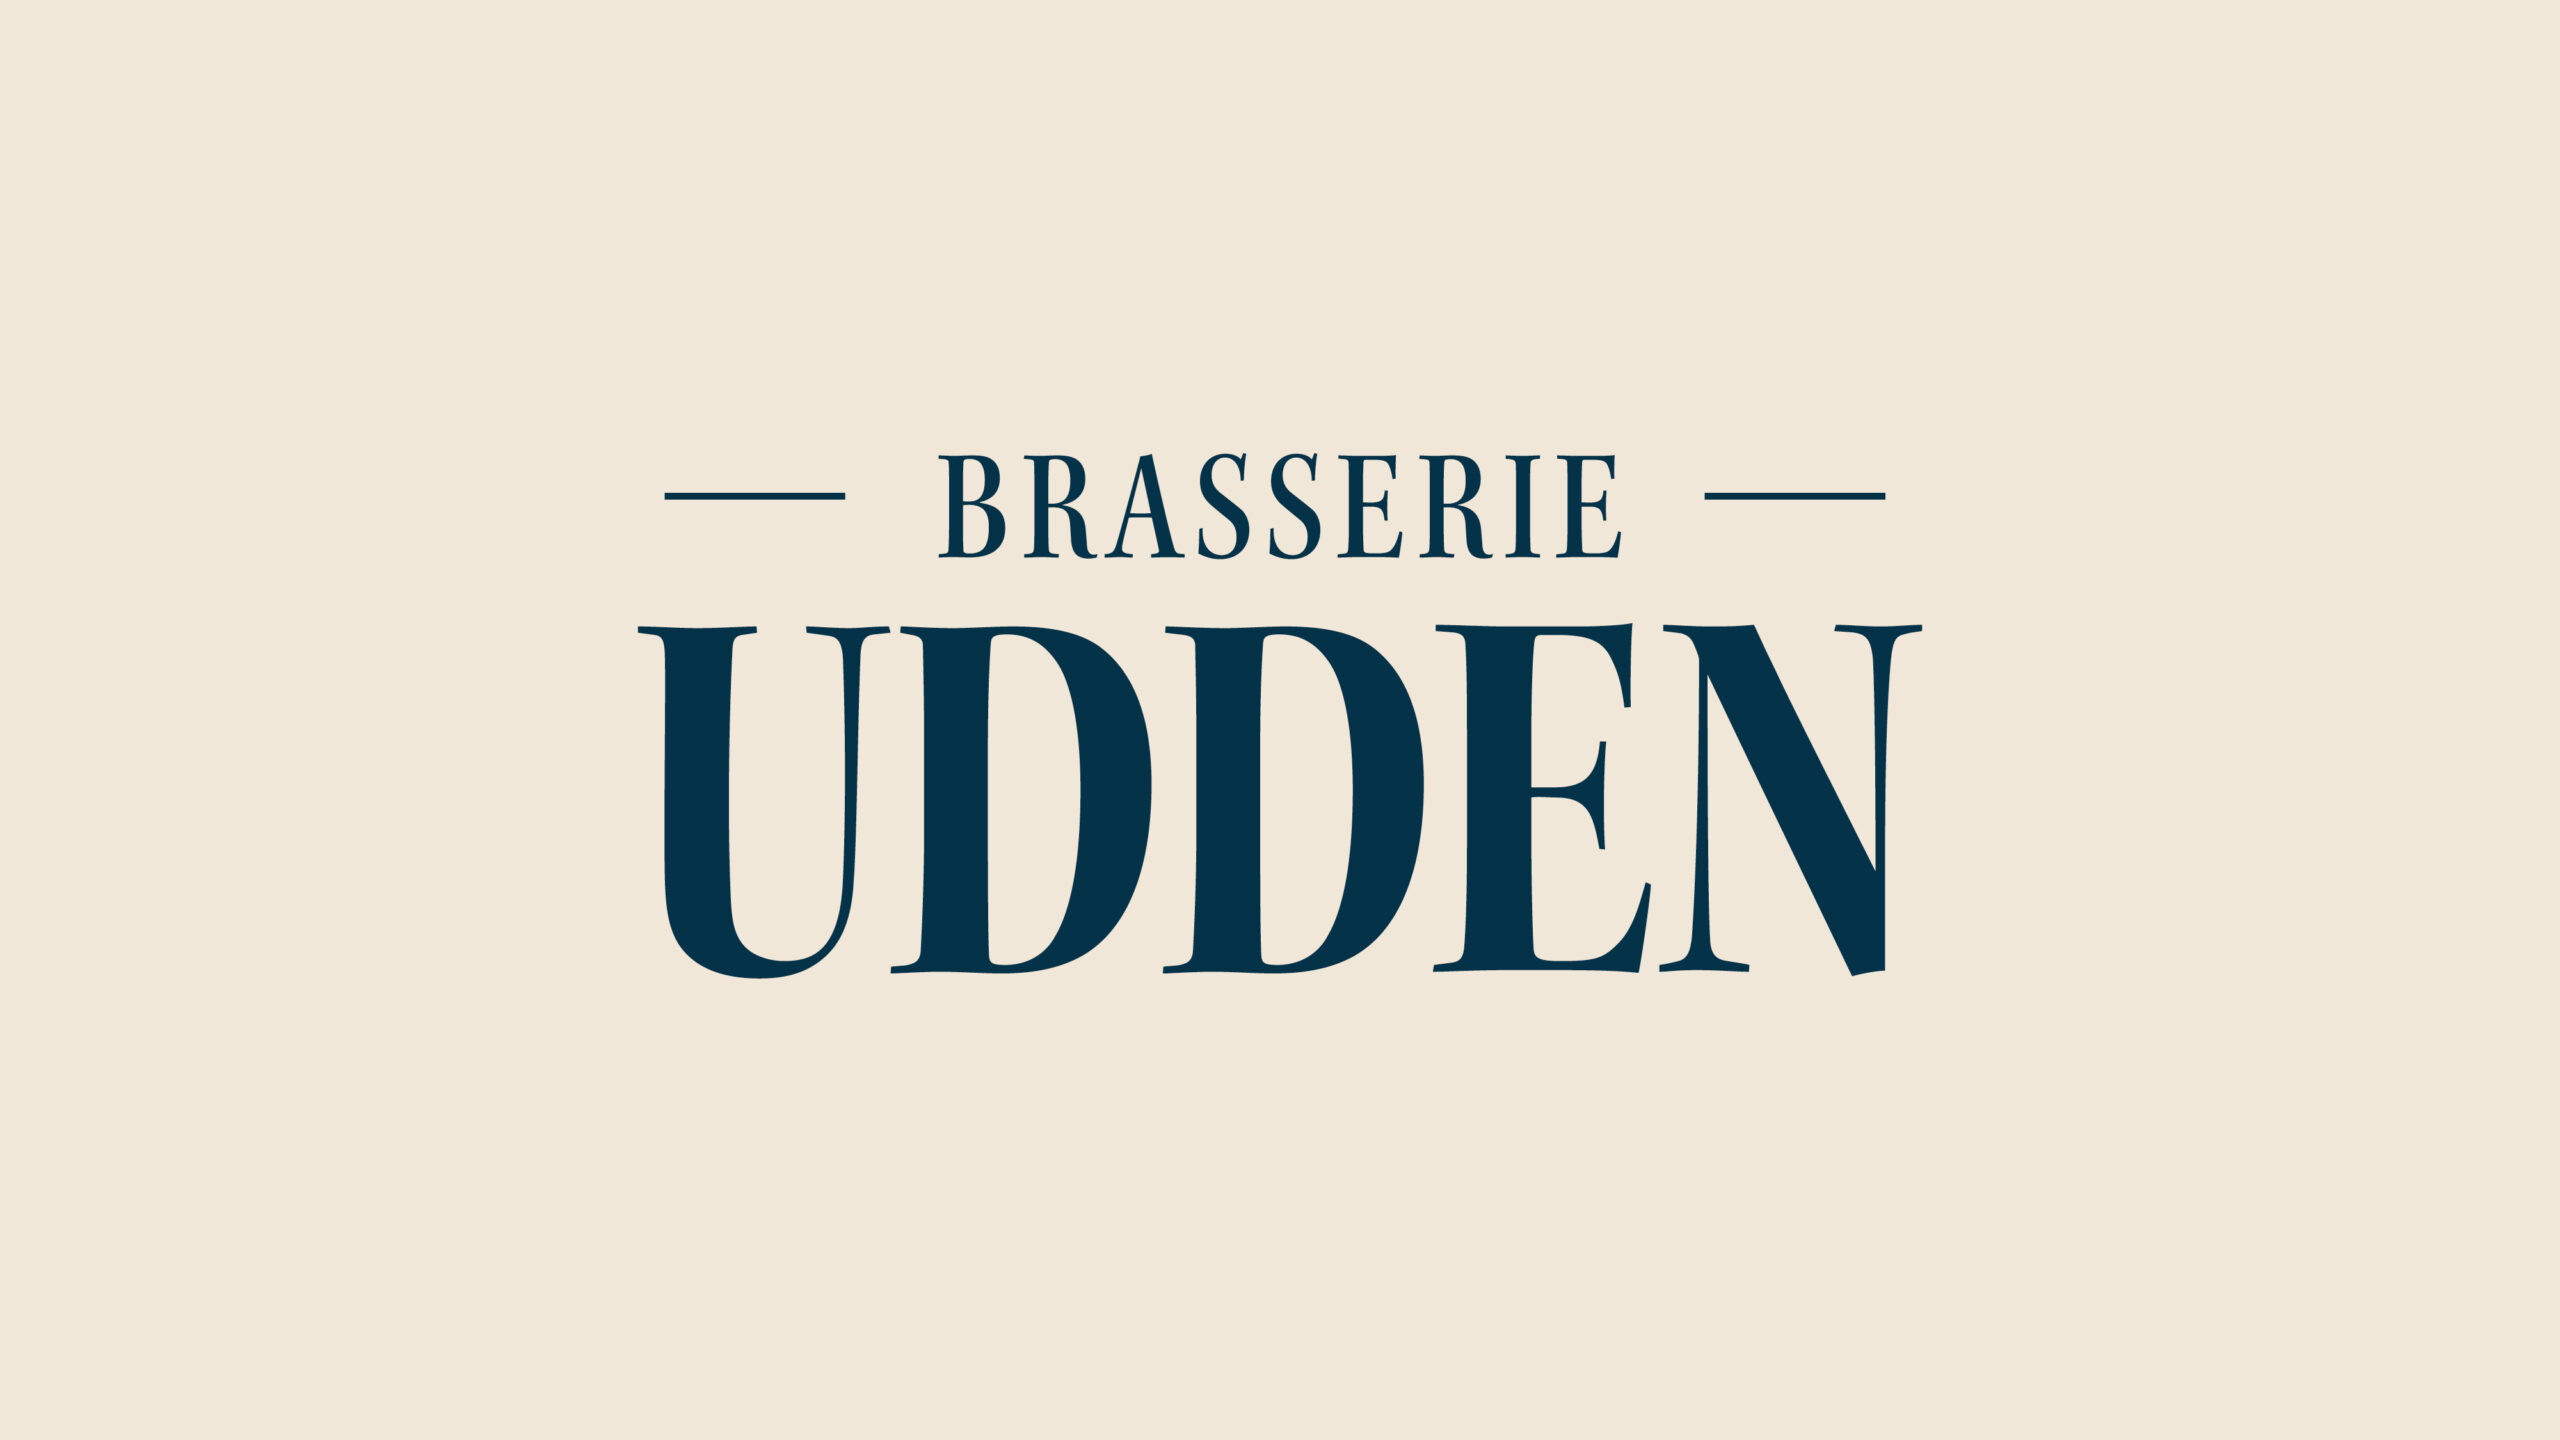 Brasserie Udden